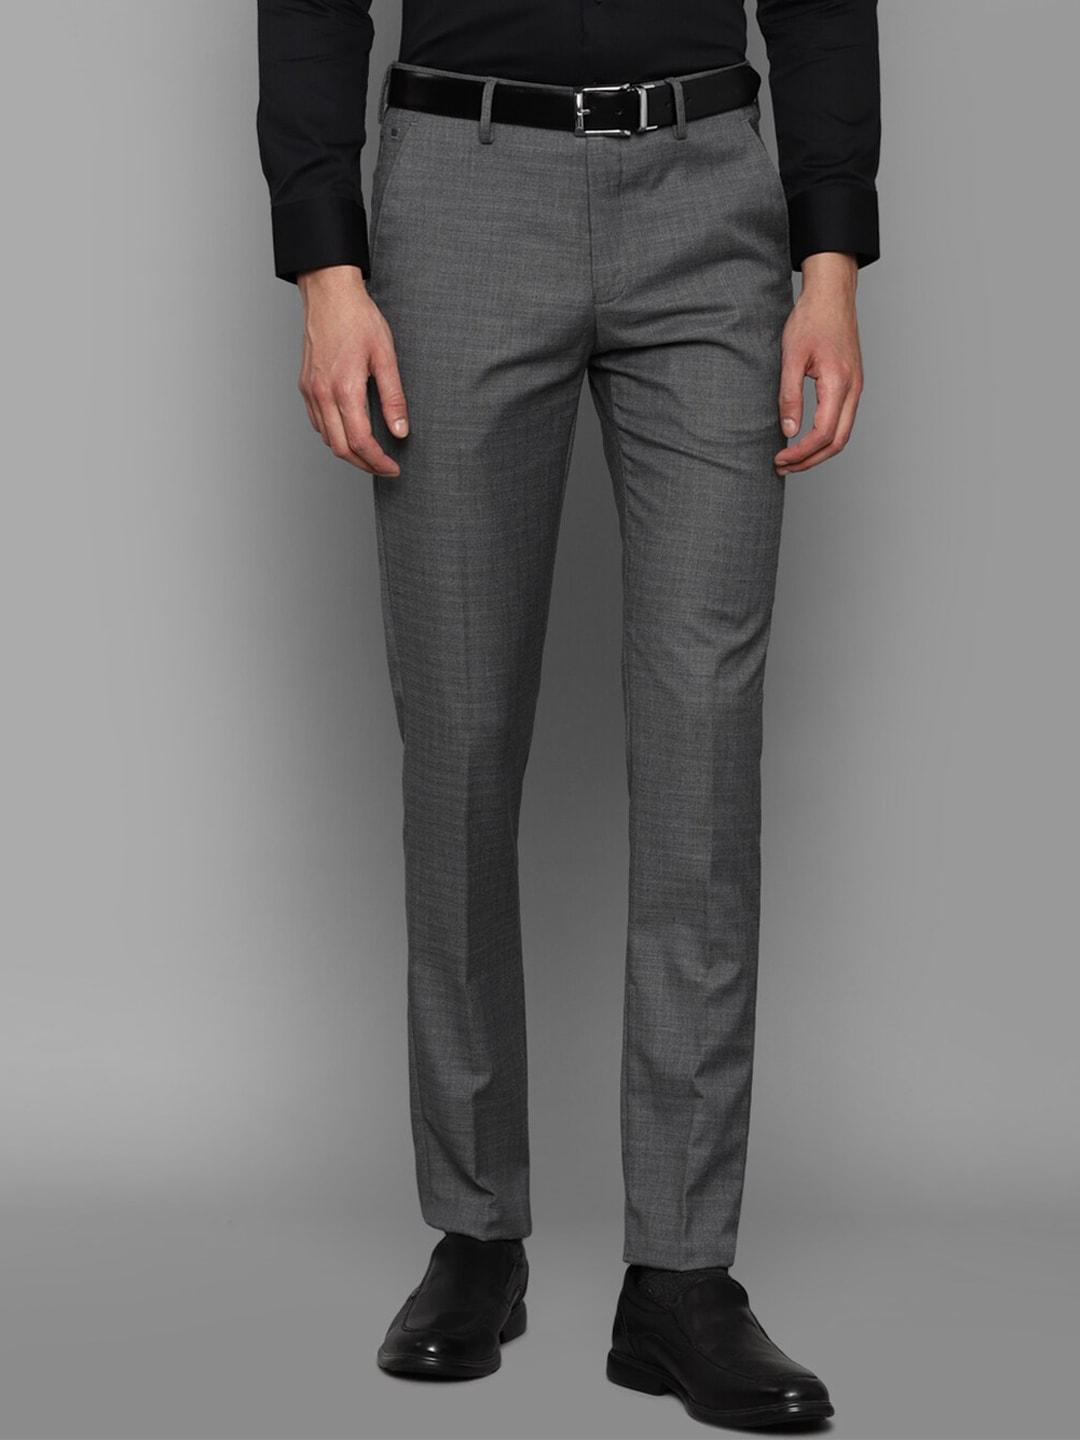 louis-philippe-men-grey-slim-fit-formal-trouser